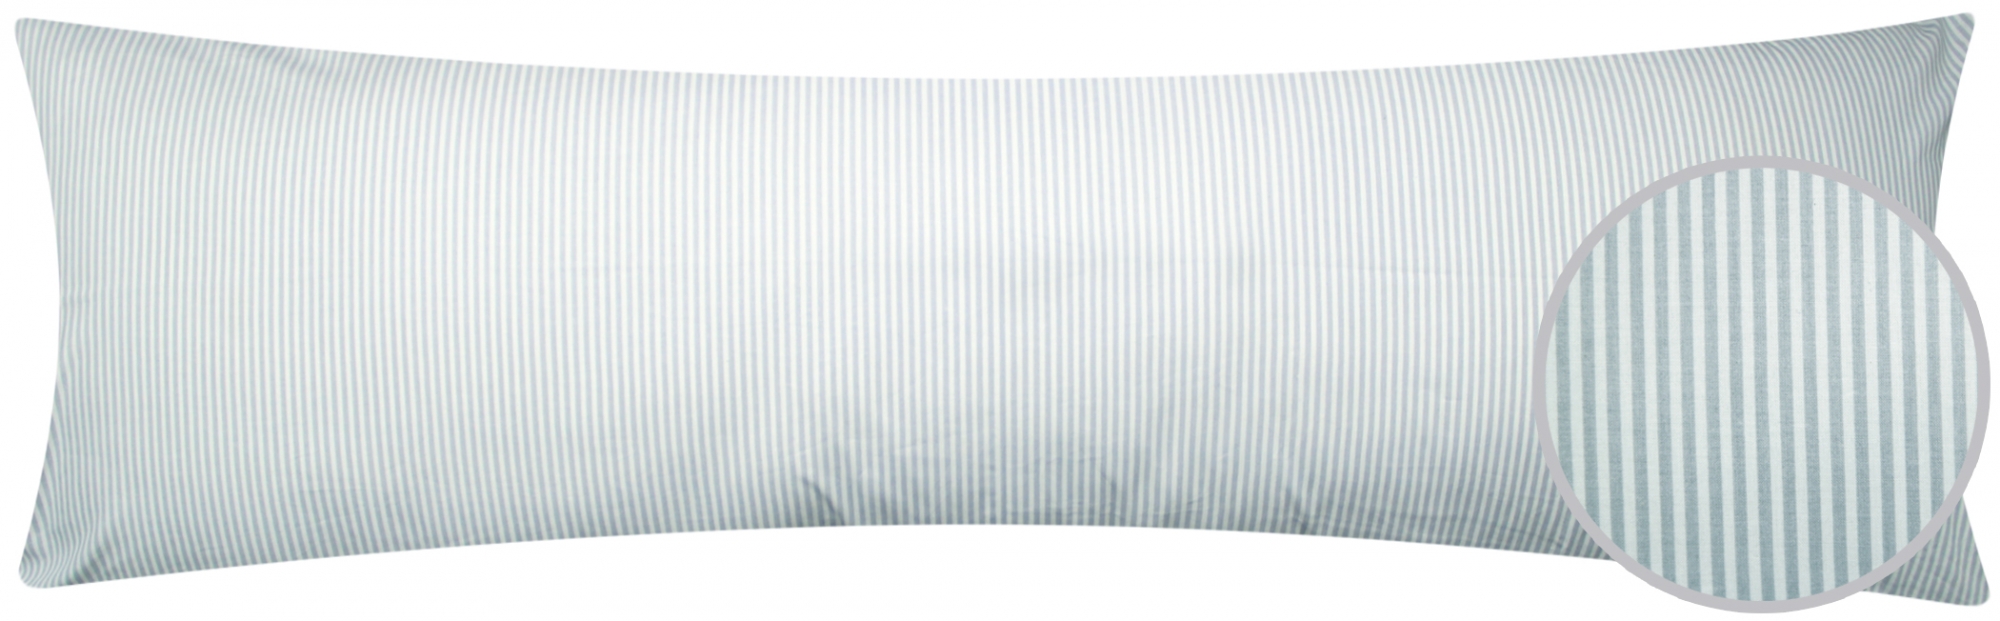 Renforcé Seitenschläferkissen Bezug 40x145cm - Grau Weiß gestrieft - Modern - 100% Baumwolle Stillkissenbezug (J-Streifen-01)